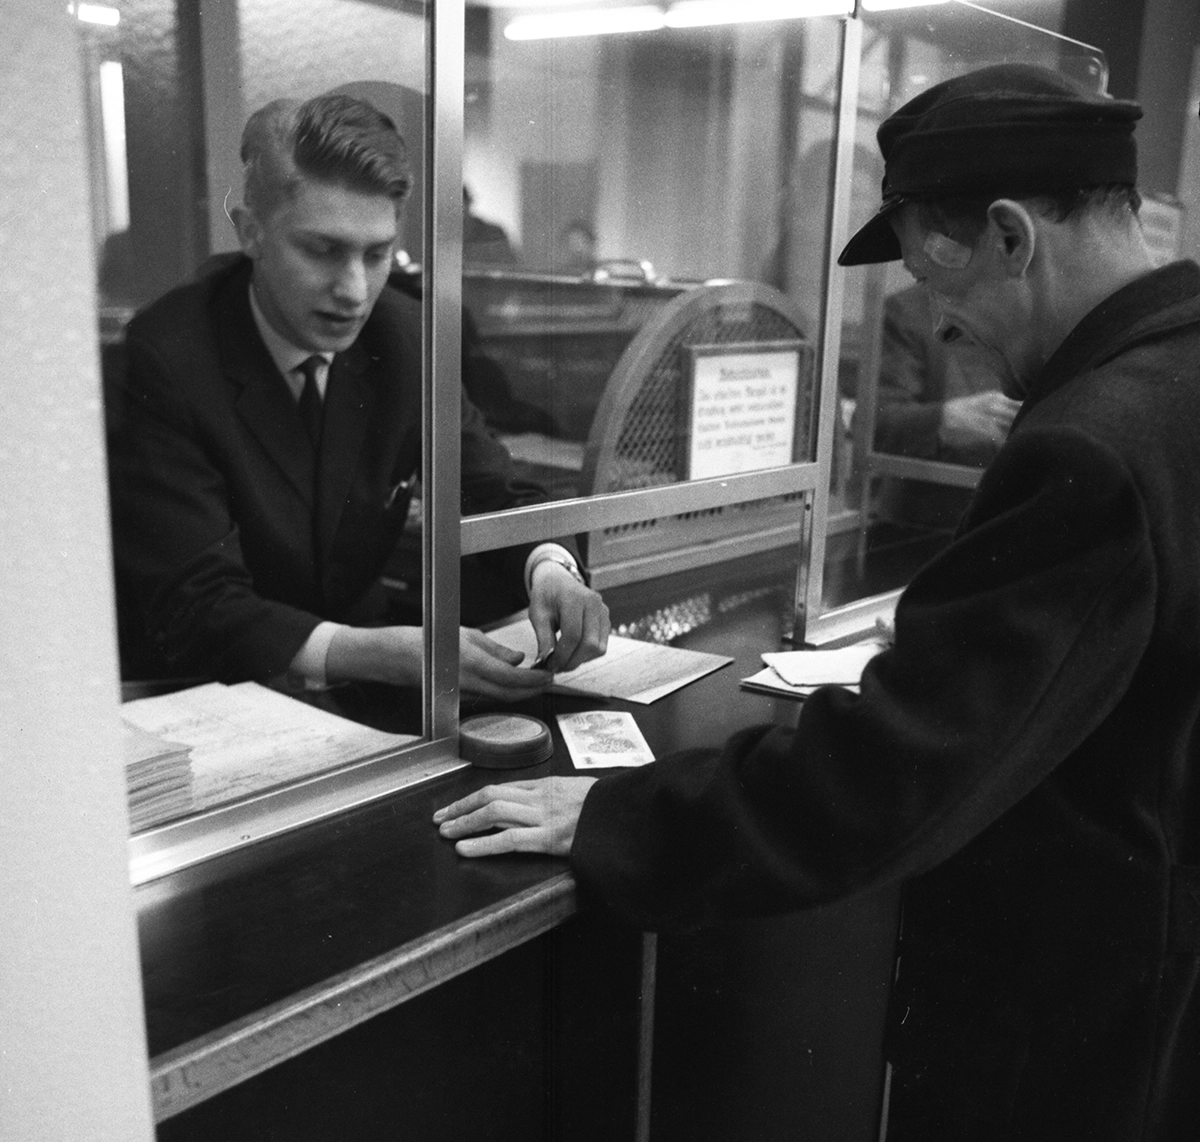 Arbeitslose beim Arbeitsamt Dortmund im Jahre 1966. ©picture alliance / Klaus Ros